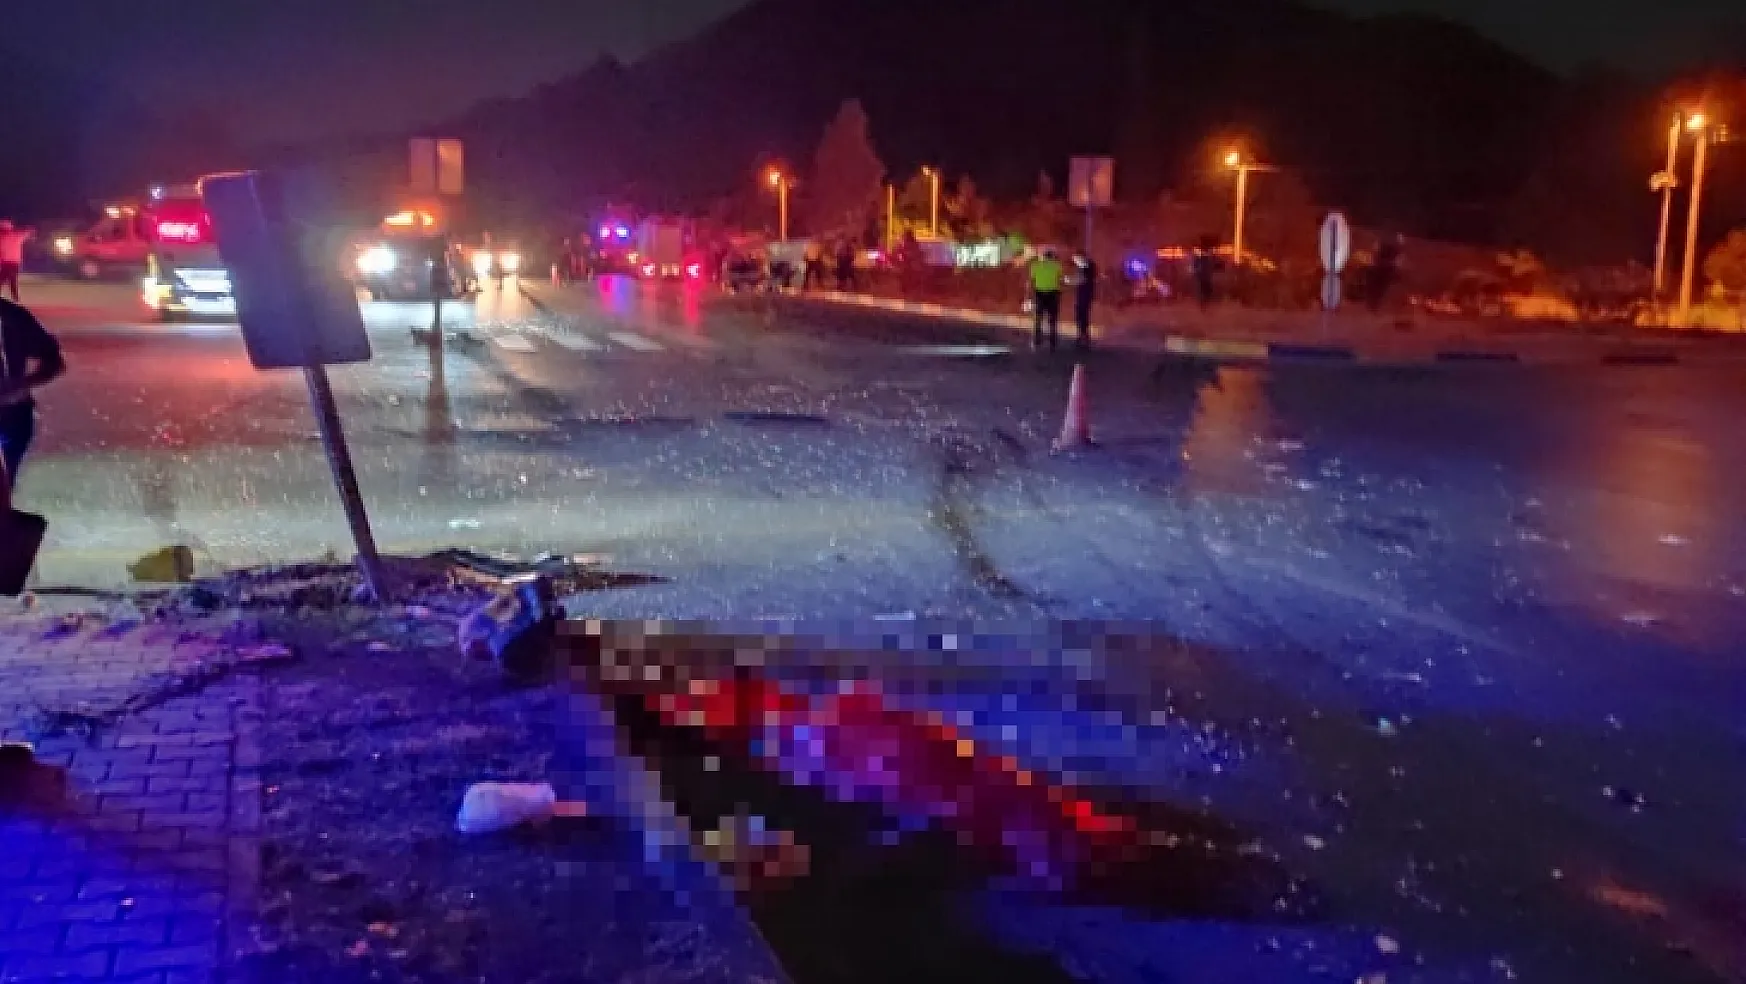 Fethiye-Seydikemer Çırpı Kavşağında trafik kazası: 2 ölü, 5 yaralı